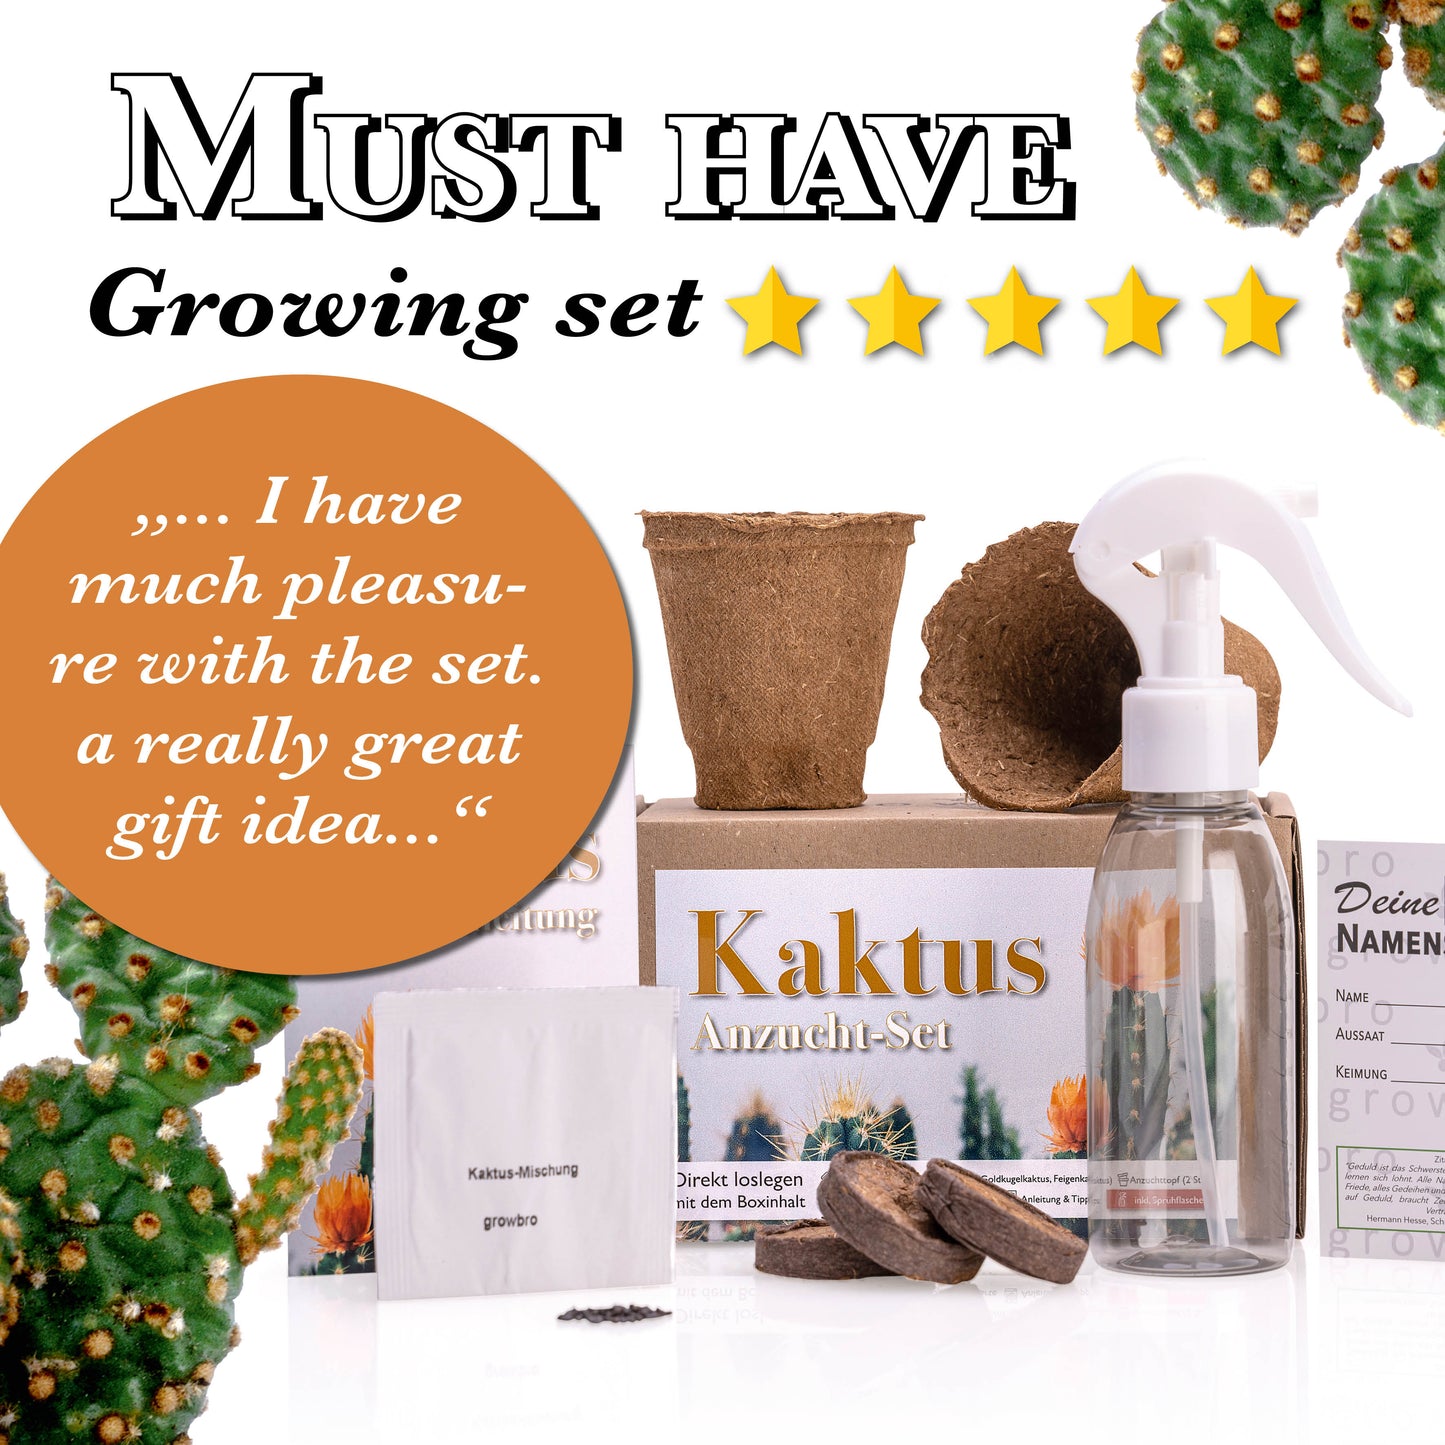 CACTUS growbro GROW KIT incl. spray bottle | birthday gift, succulents, gifts for women & men, cacti seeds, indoor plants, garden gift